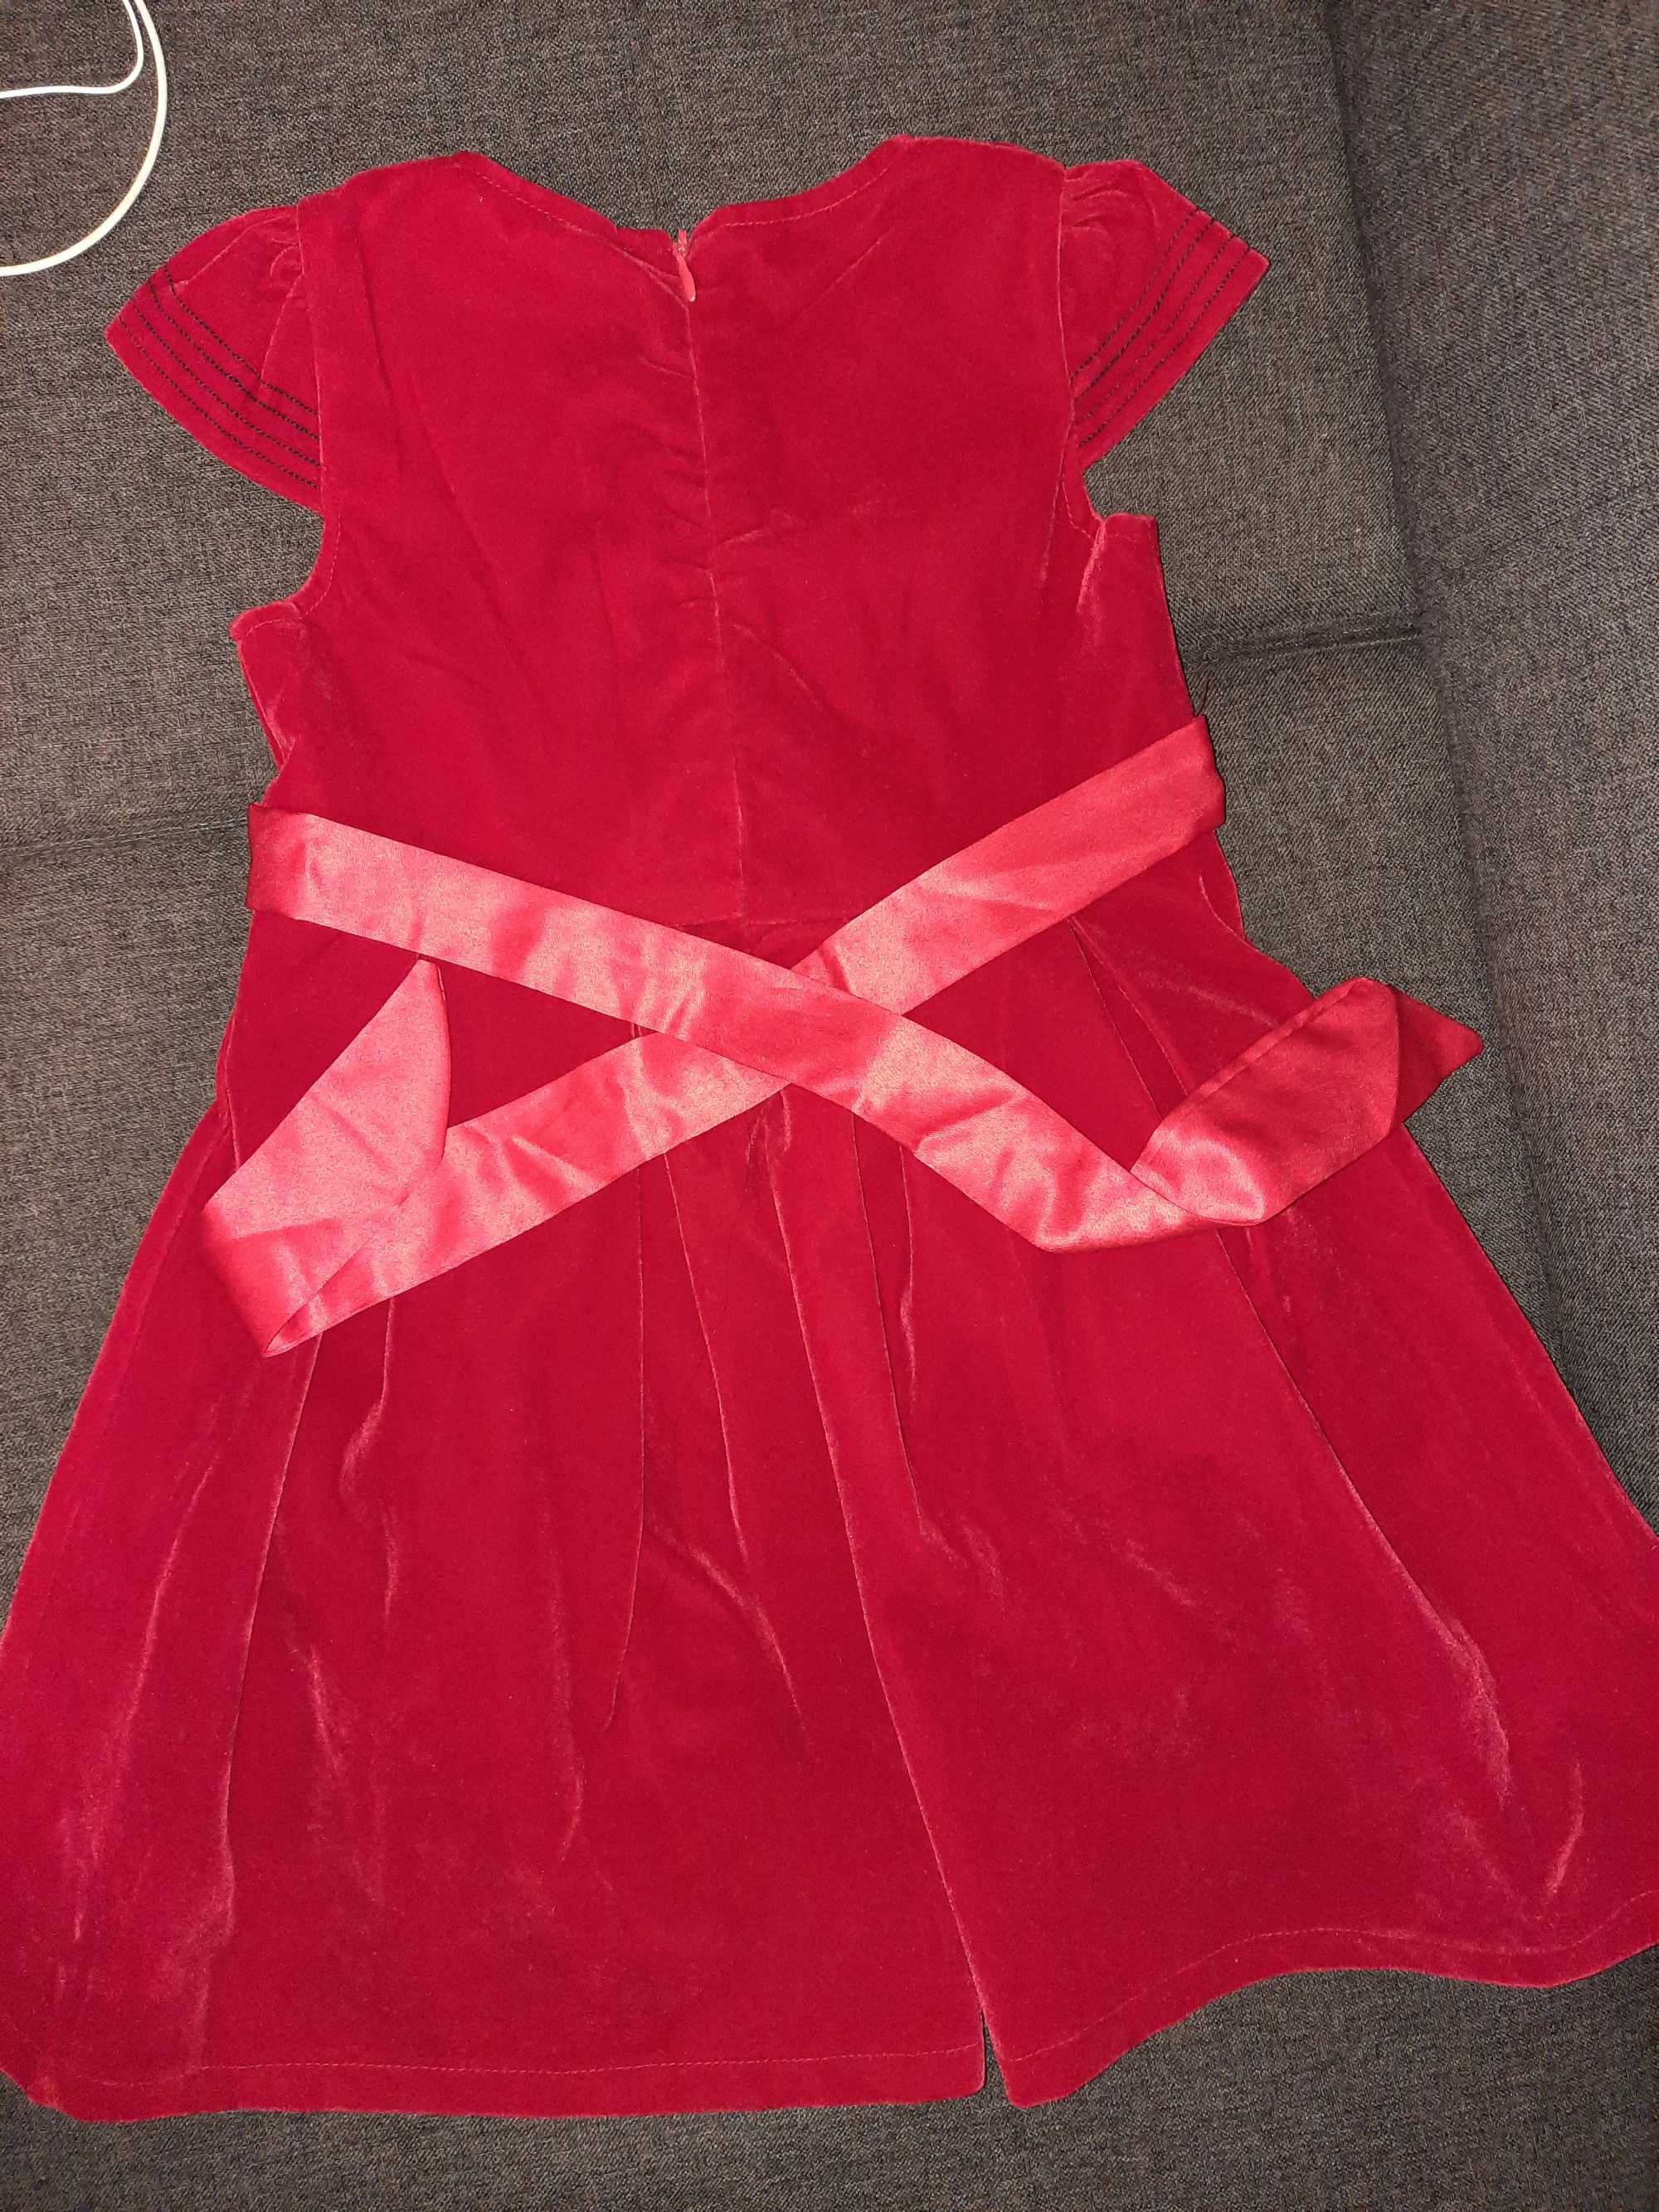 Rochie/rochita rosie catifea Crăciun noua